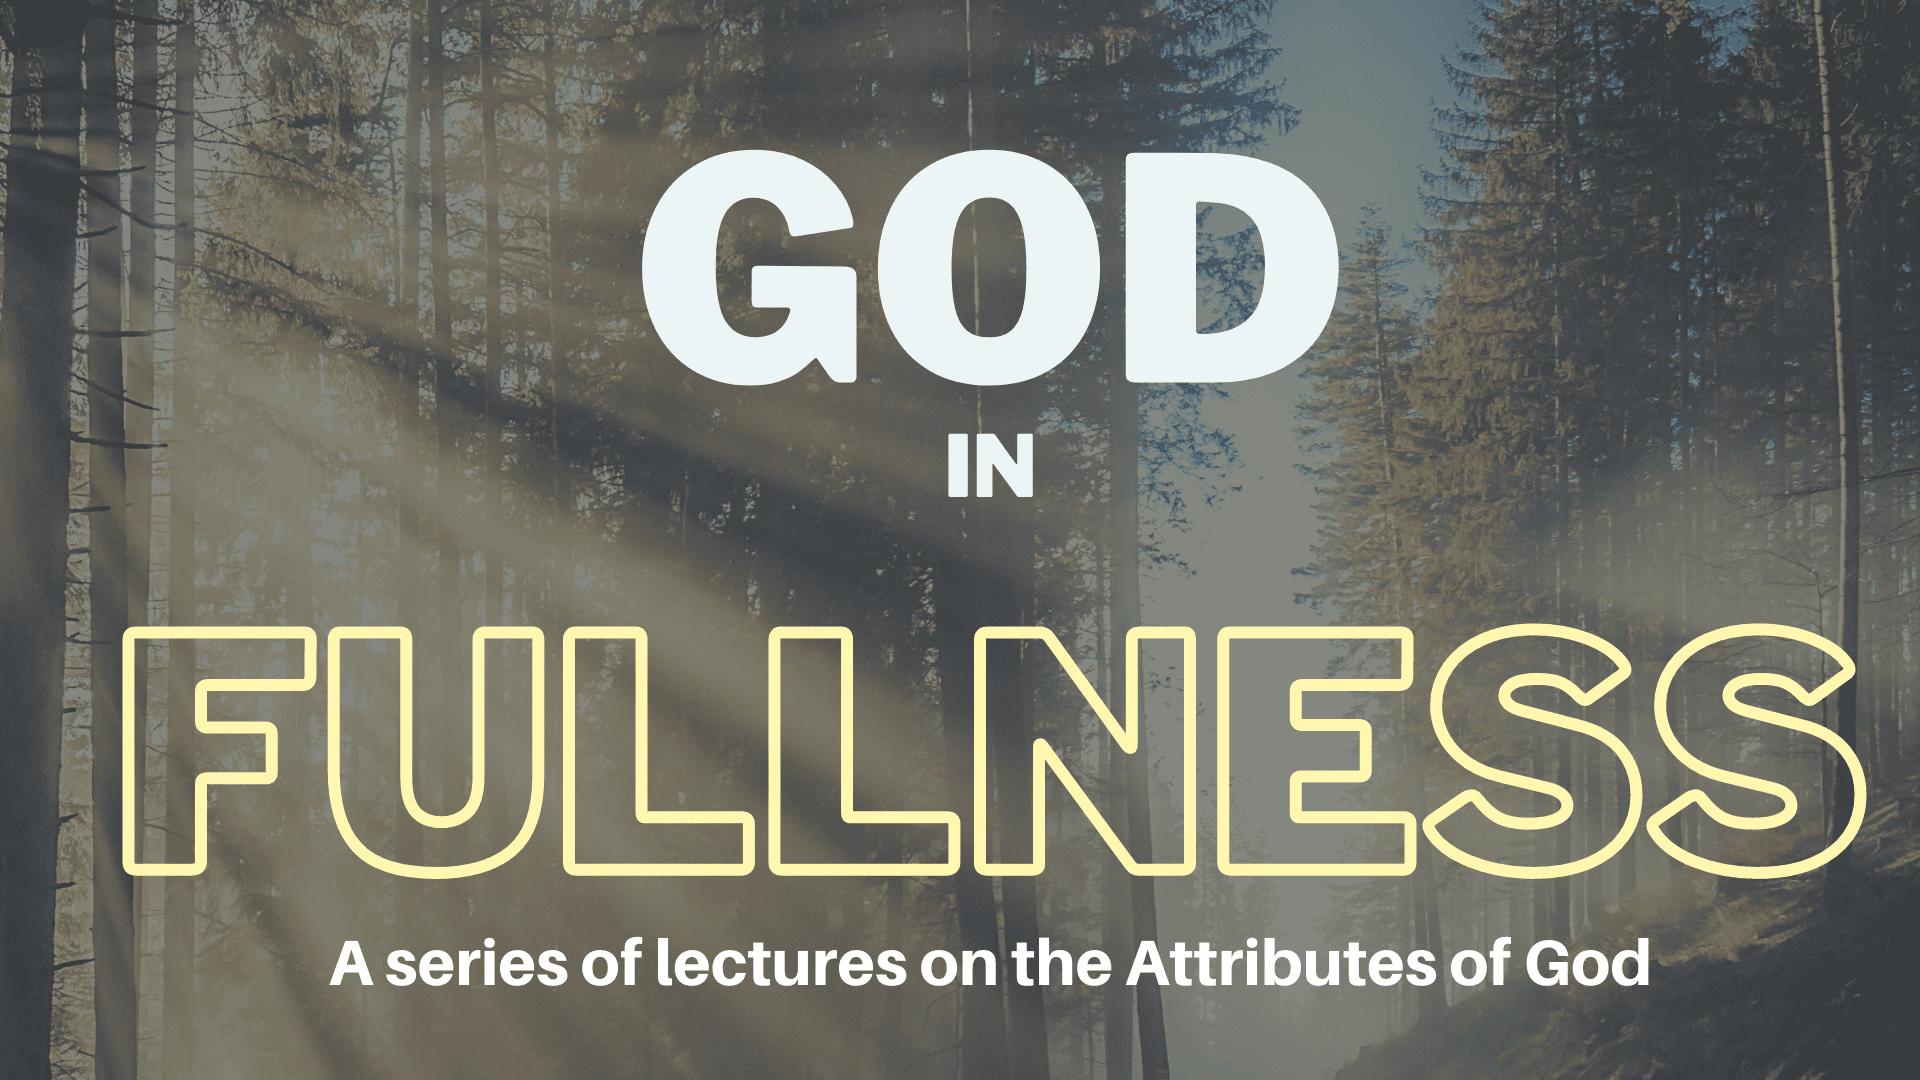 God in Fullness: The Unity of God